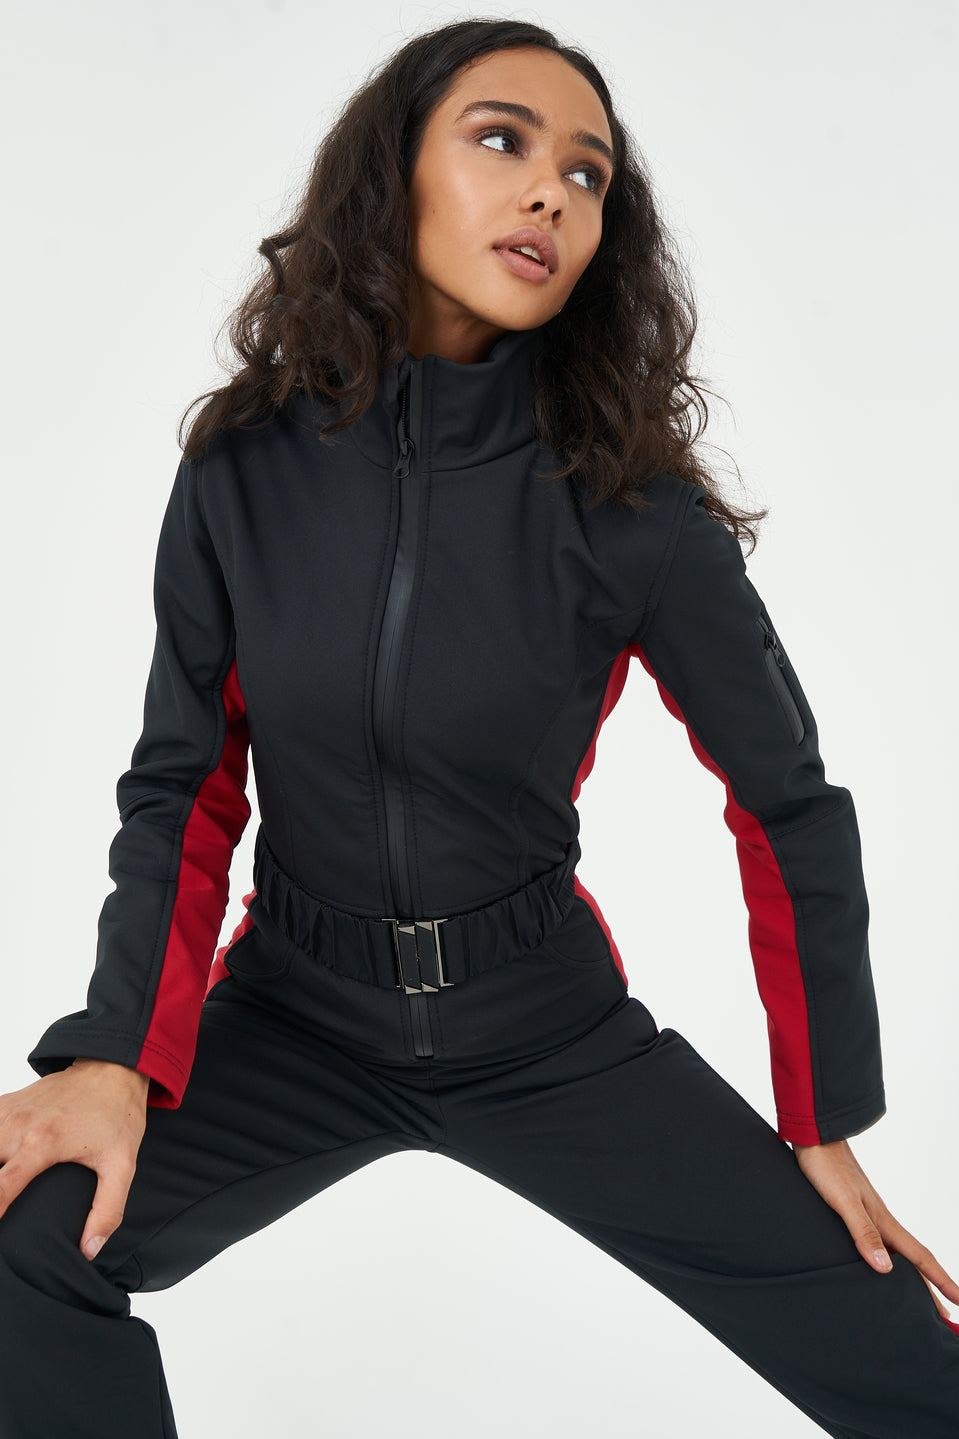 Ski suit slim fit REMBRA - Black with red stripes skinny ski